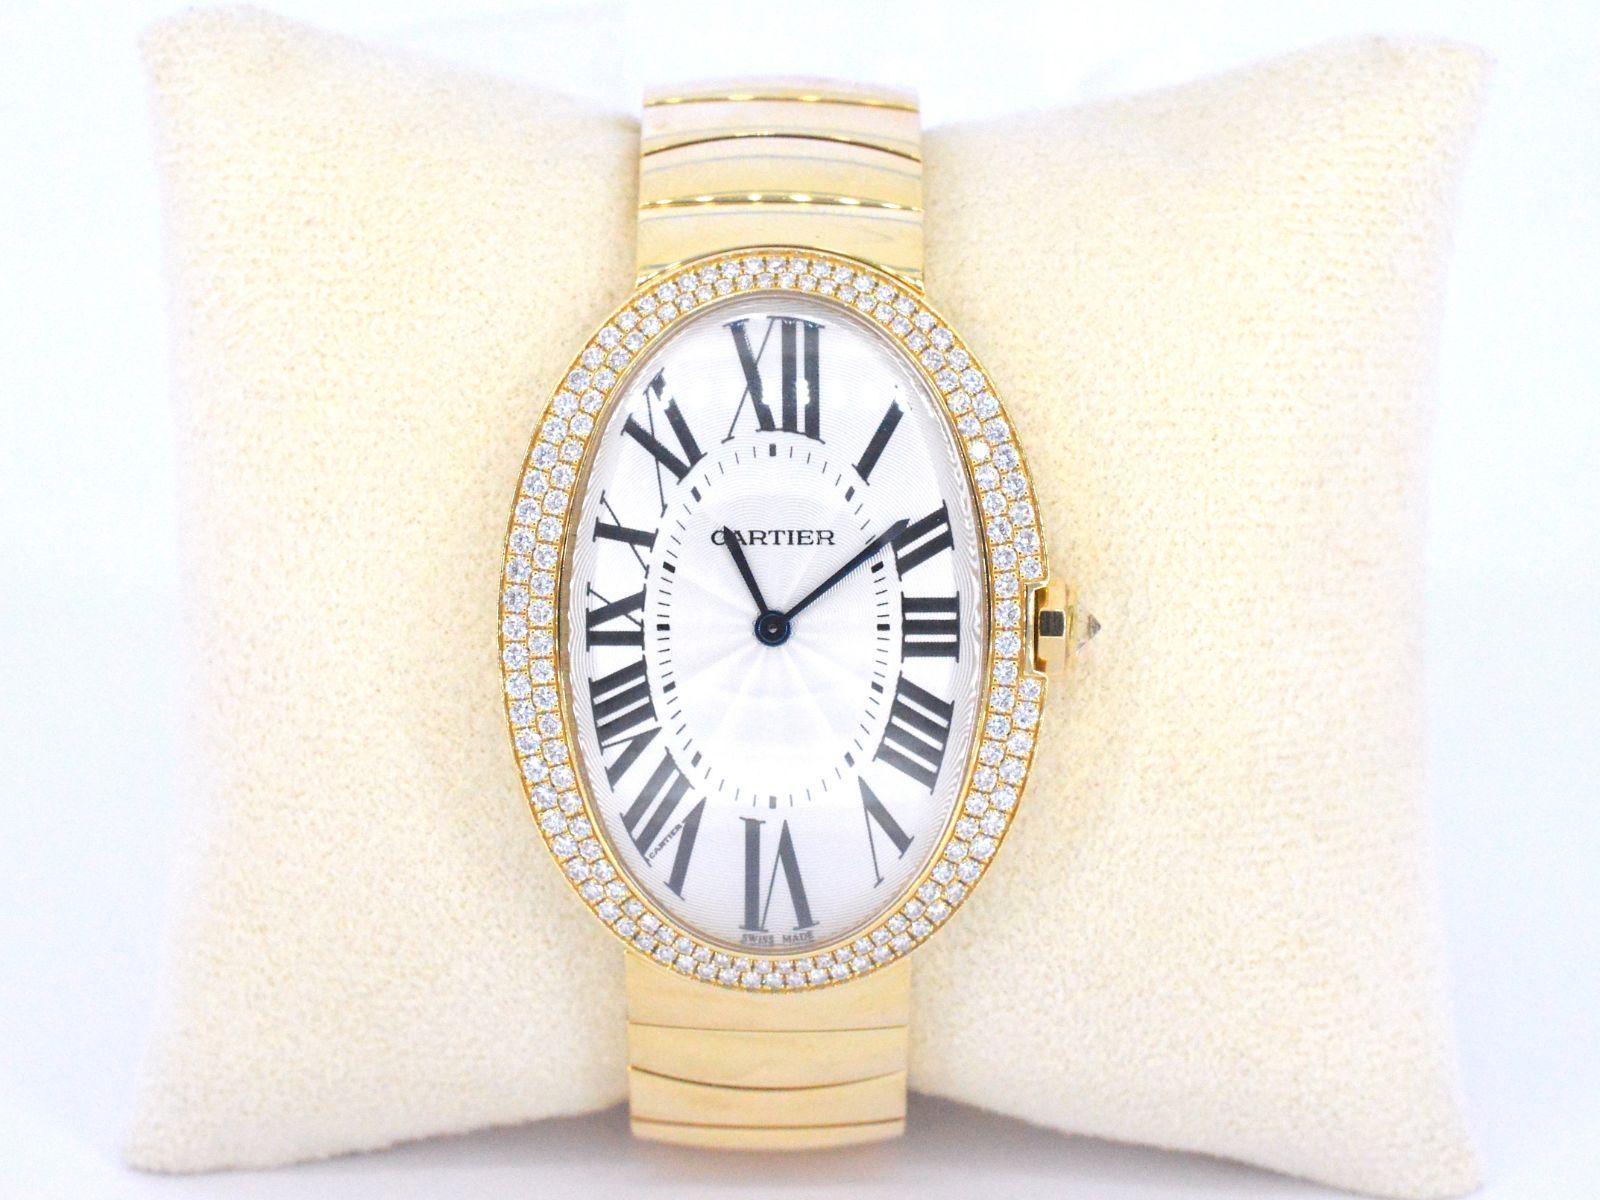 Cartier Baignoire Large 18k Gold Diamond Ladies Watch WB520003. Mouvement à remontage manuel. Boîtier ovale en or 18 carats 44 mm x 34 mm. Couronne sertie de diamants. Lunette en diamant d'origine de l'usine Cartier 149. Verre saphir résistant aux